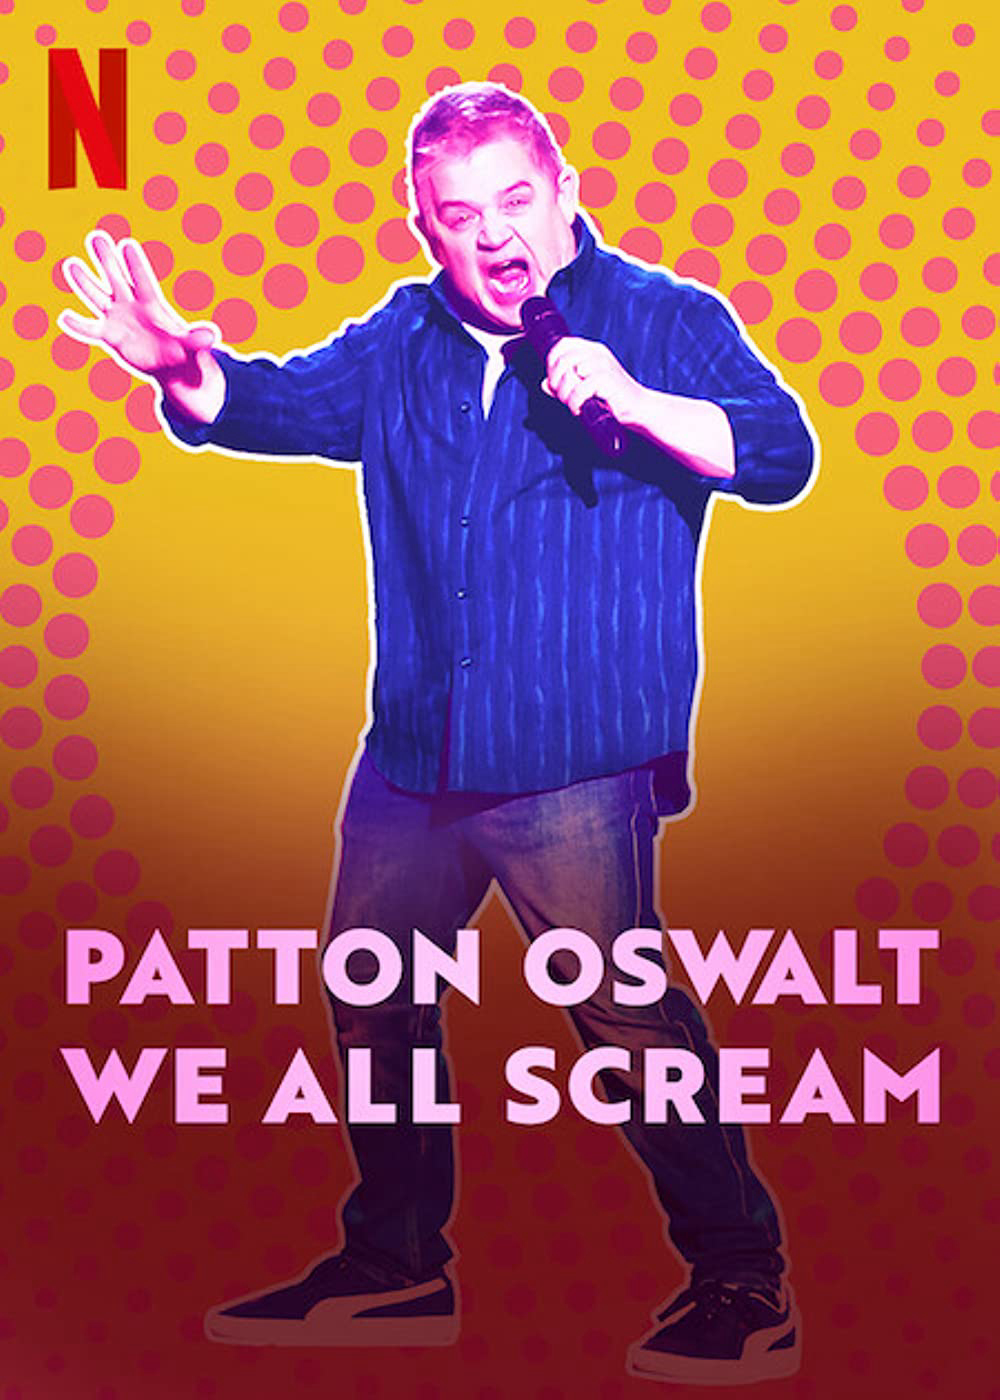 Xem Phim Patton Oswalt: Chúng Ta Cùng Gào Thét - Patton Oswalt: We All Scream - online truc tuyen vietsub mien phi hinh anh 1